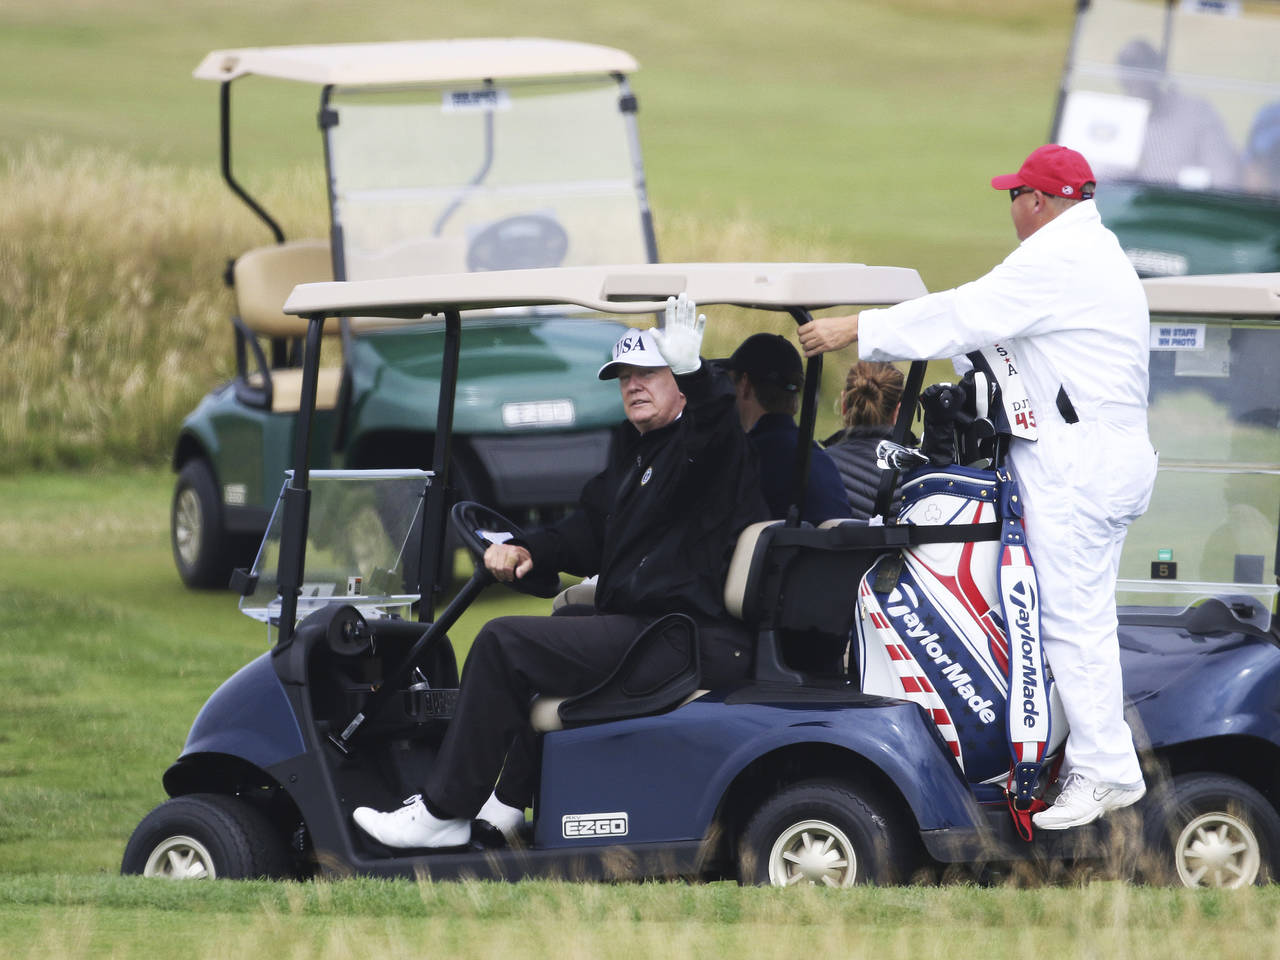 Descanso. Donald Trump pasaba el fin de semana en su resort de golf en Turnberry, Escocia, entre protestas de miles de escoceses.